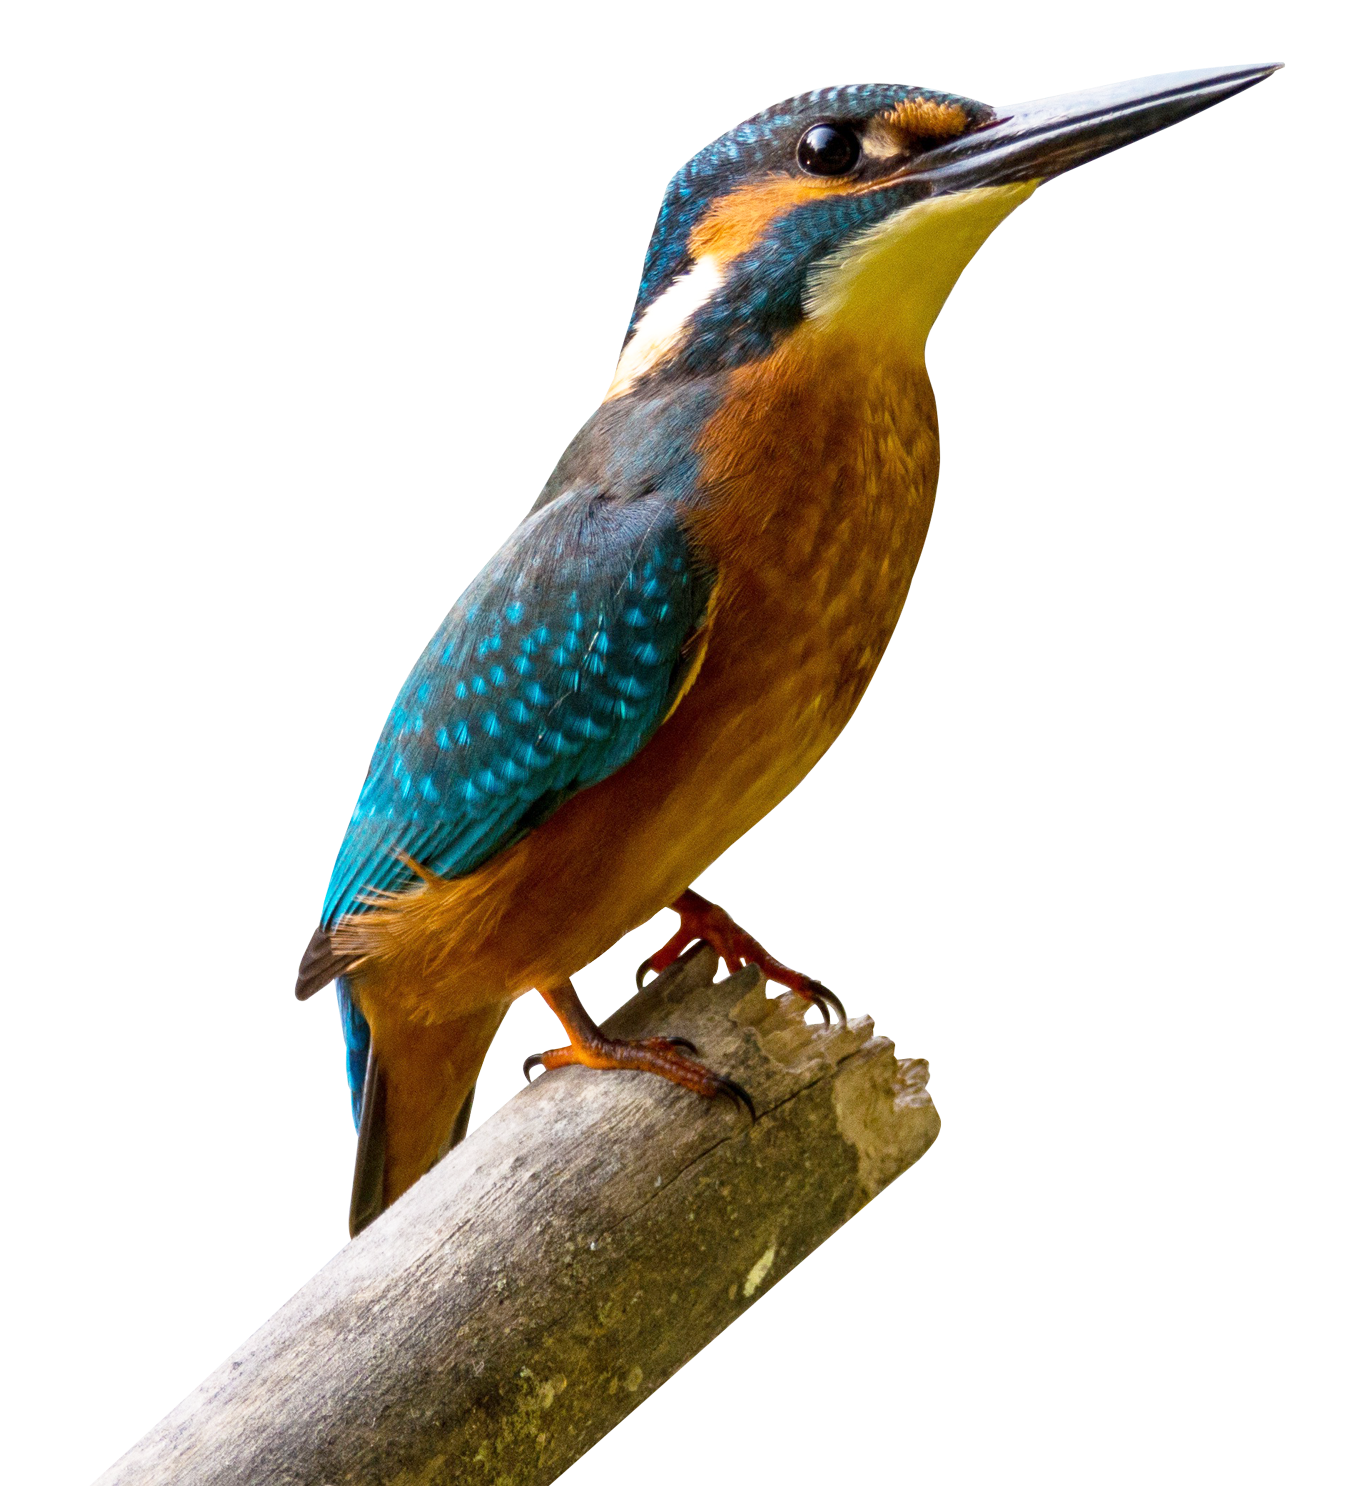 PNGPIX-COM-Kingfisher-Bird-PNG-Transparent-Image.png, PNG Kingfisher Bird - Free PNG